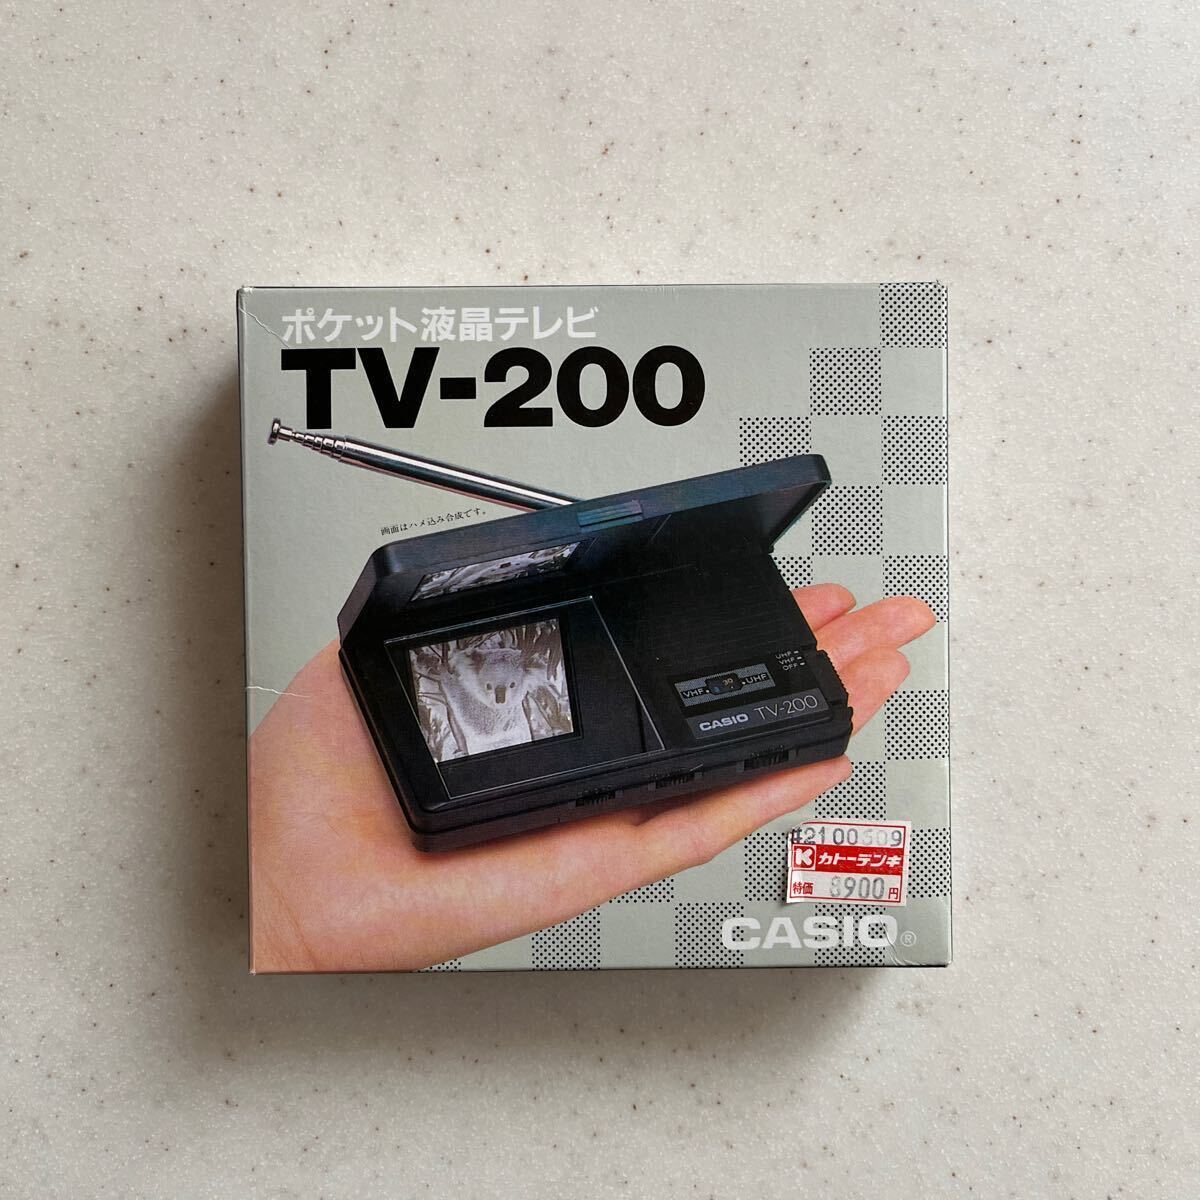 カシオ ポケット液晶テレビ(TV-200)_画像1